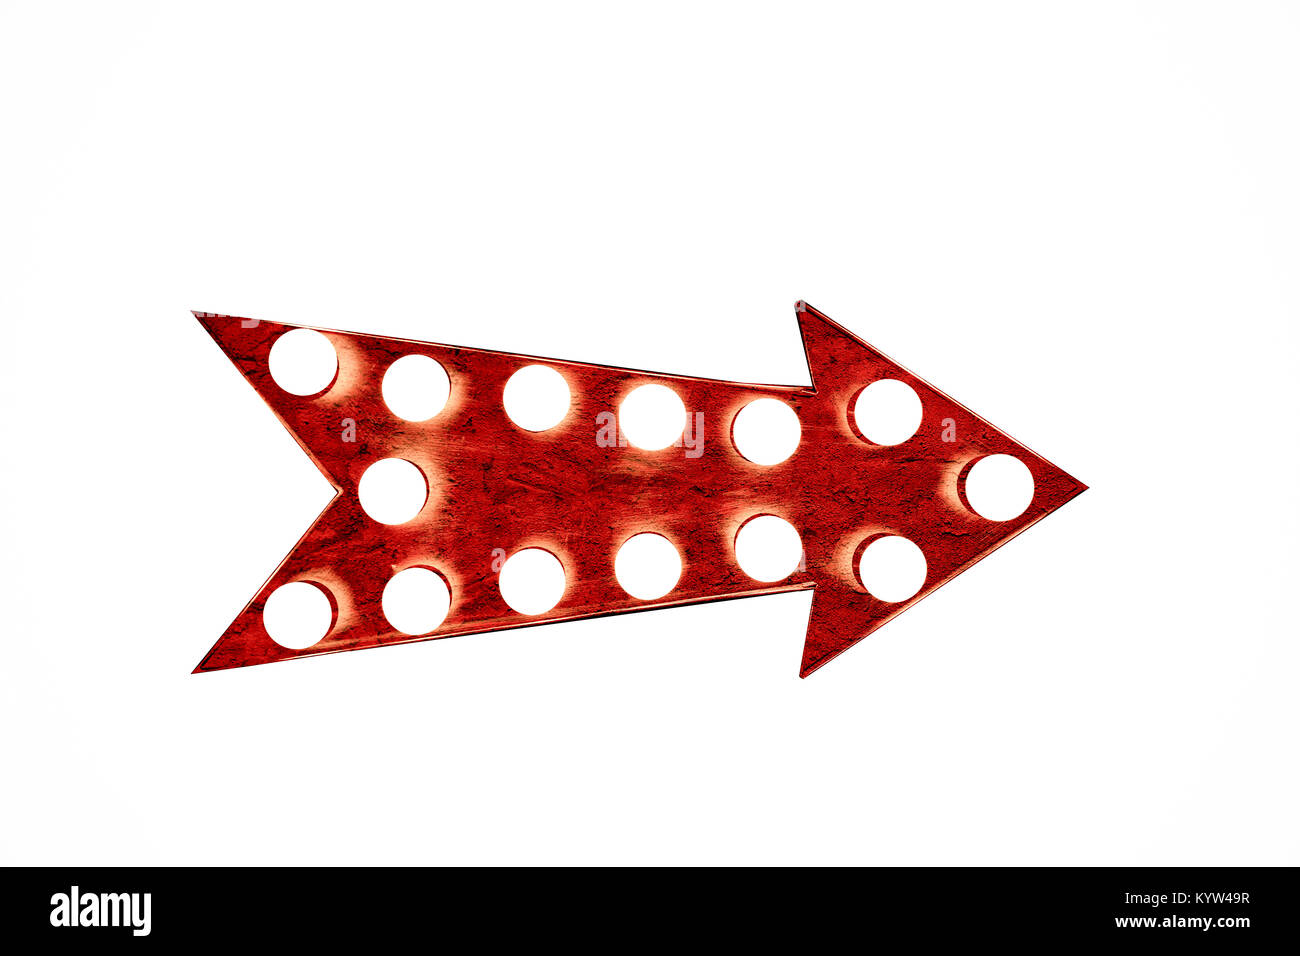 Vieux grungy 12.2005 flèche rouge comme un vintage et colorées affichage lumineux avec ampoules isolé sur fond blanc Banque D'Images